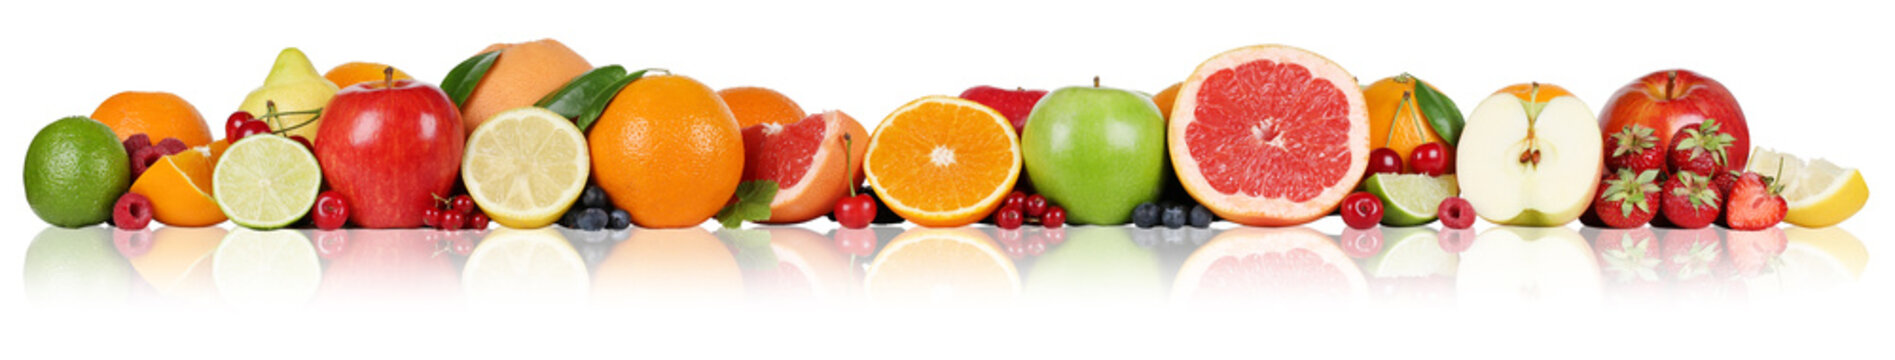 Fototapeta Früchte Orangen Zitronen Apfel Erdbeeren in einer Reihe